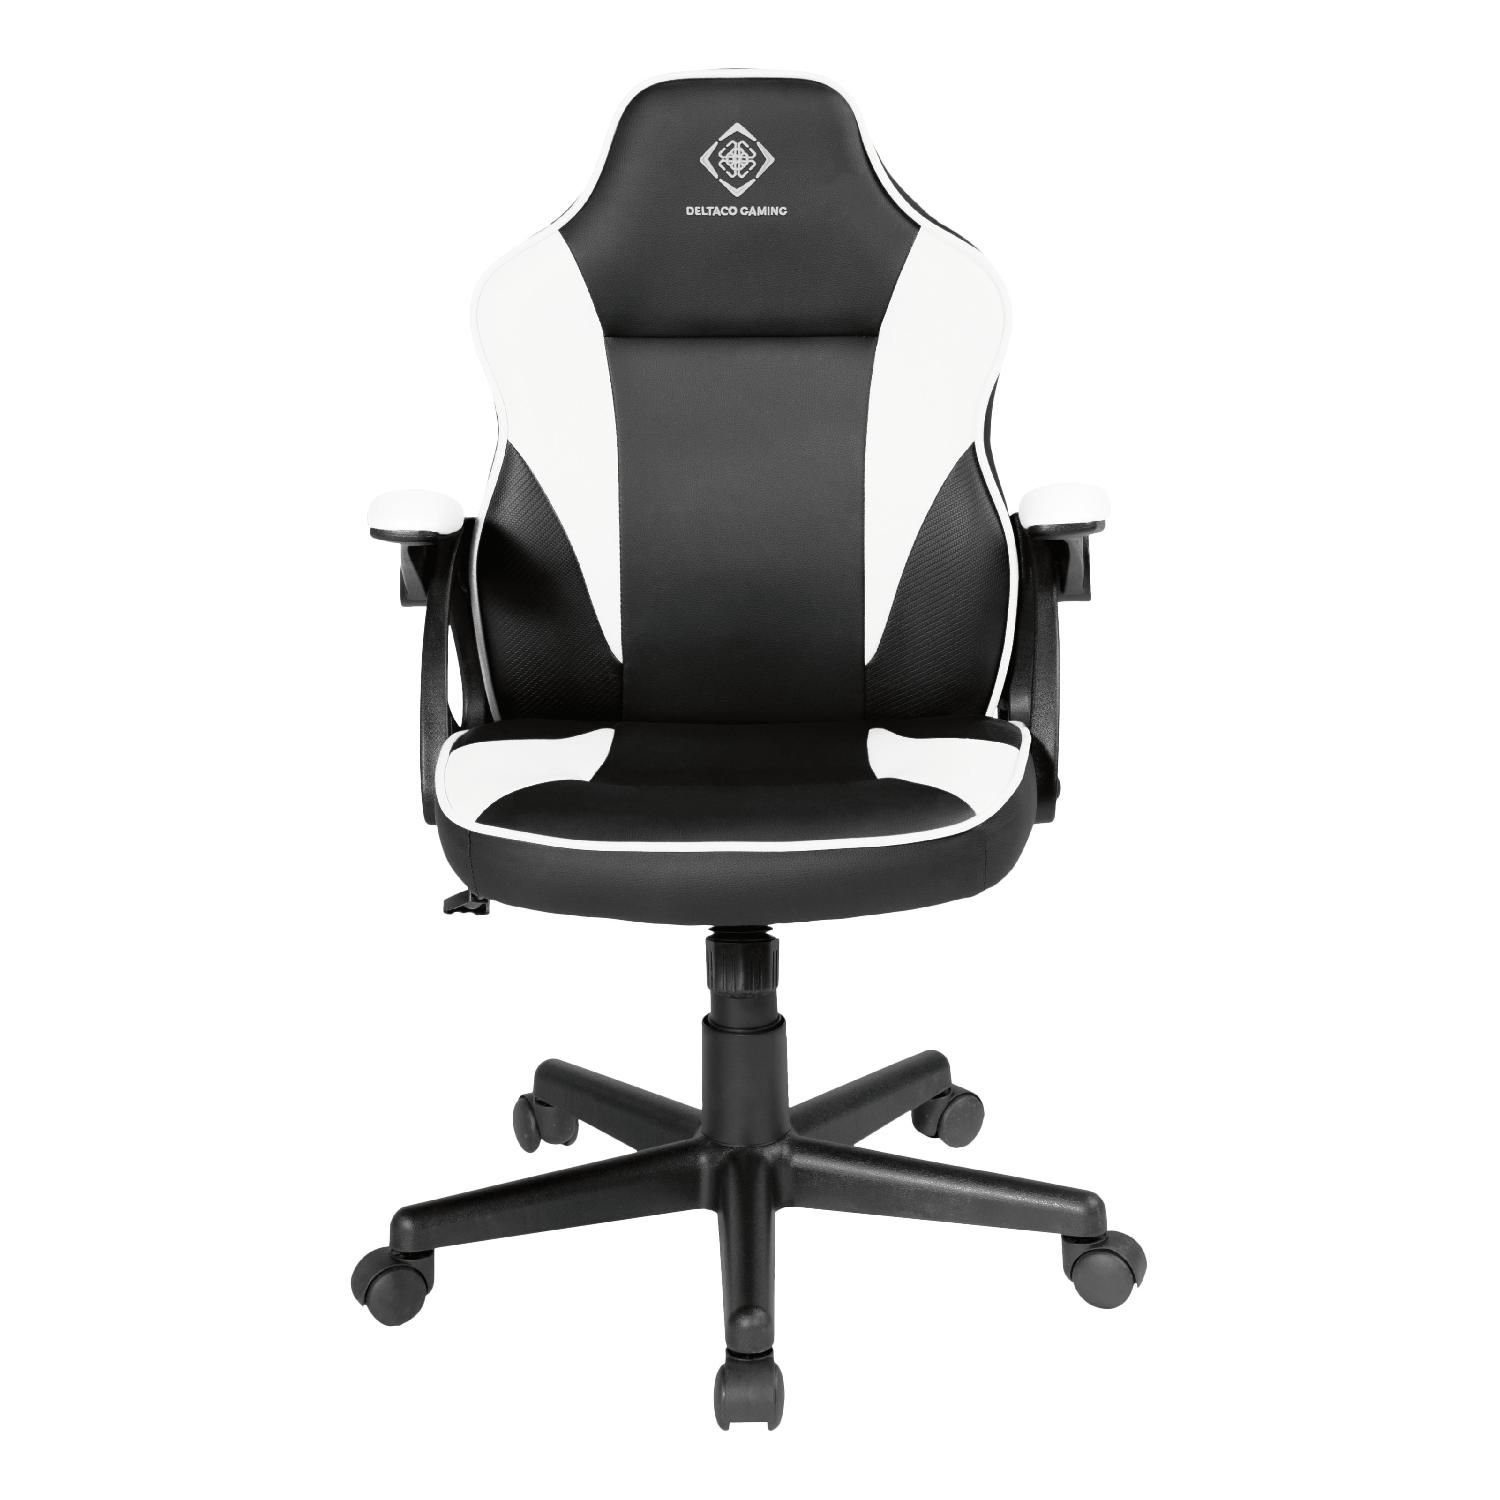 DELTACO Gaming-Stuhl Gaming Stuhl DC120 "Junior" höhenverstellbar Kunstleder, Bürostuhl für Kinder, klein, für Personen bis 150 cm schwarz/weiß | Stühle